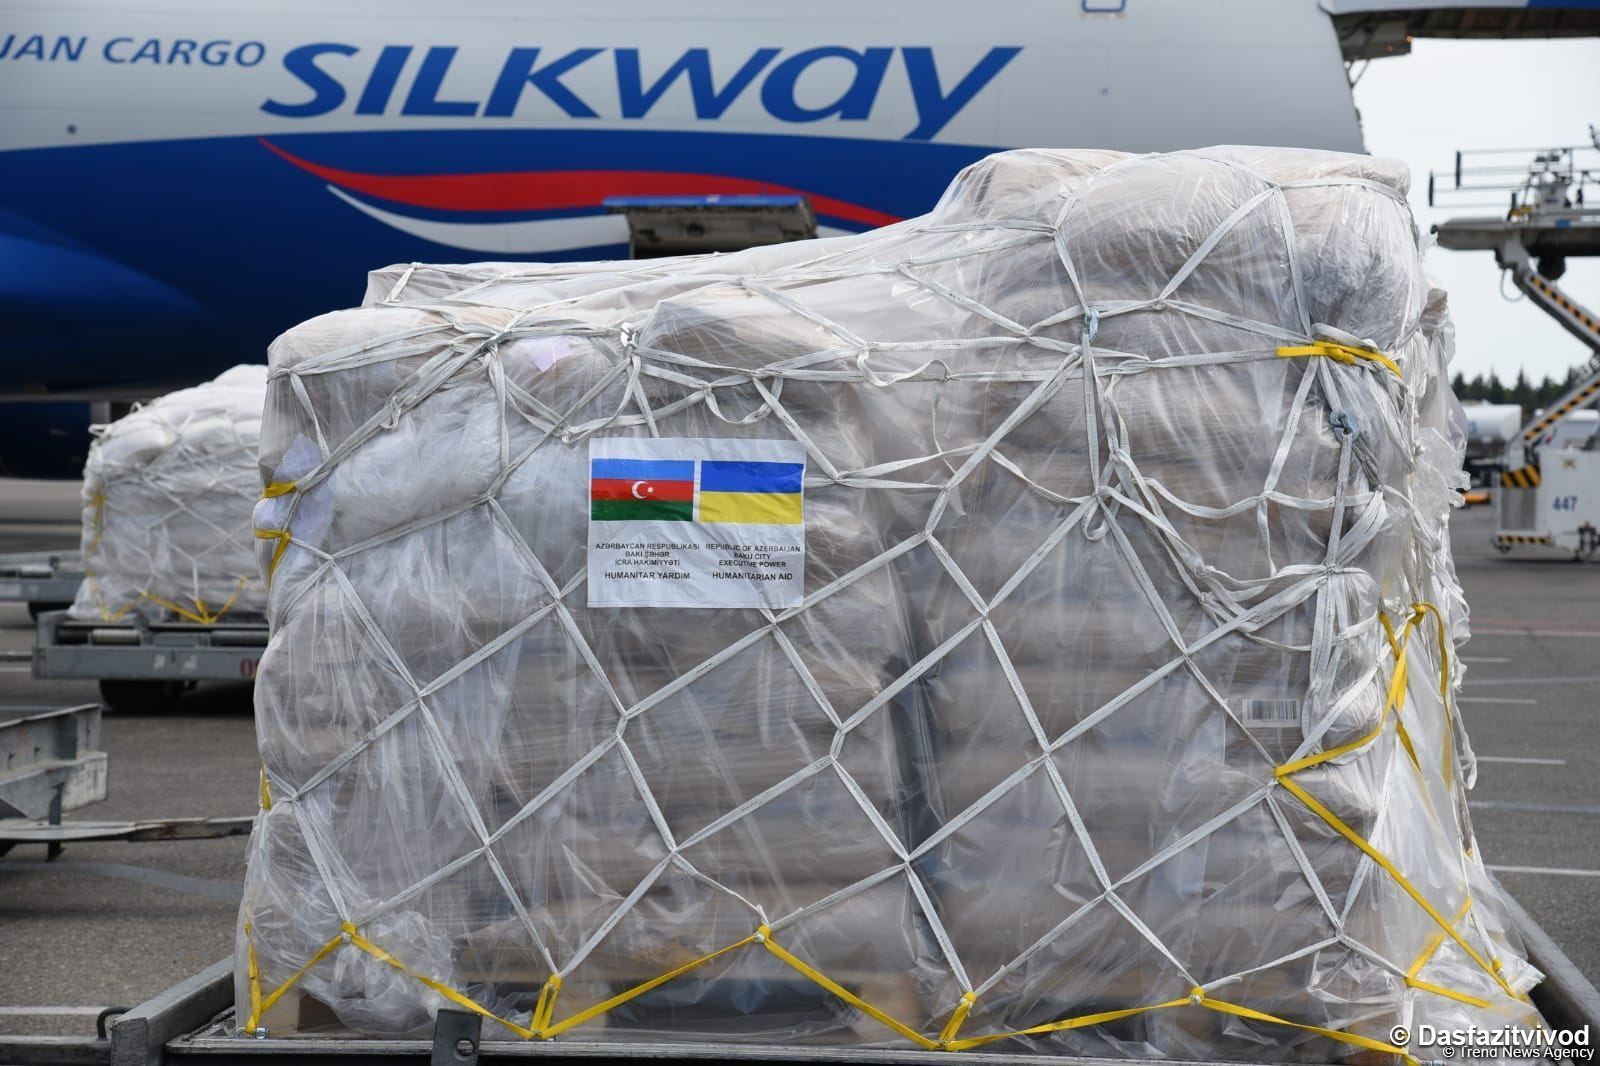 Eine weitere Ladung humanitärer Hilfe wird von Aserbaidschan in die Ukraine geschickt (FOTO) - Gallery Image